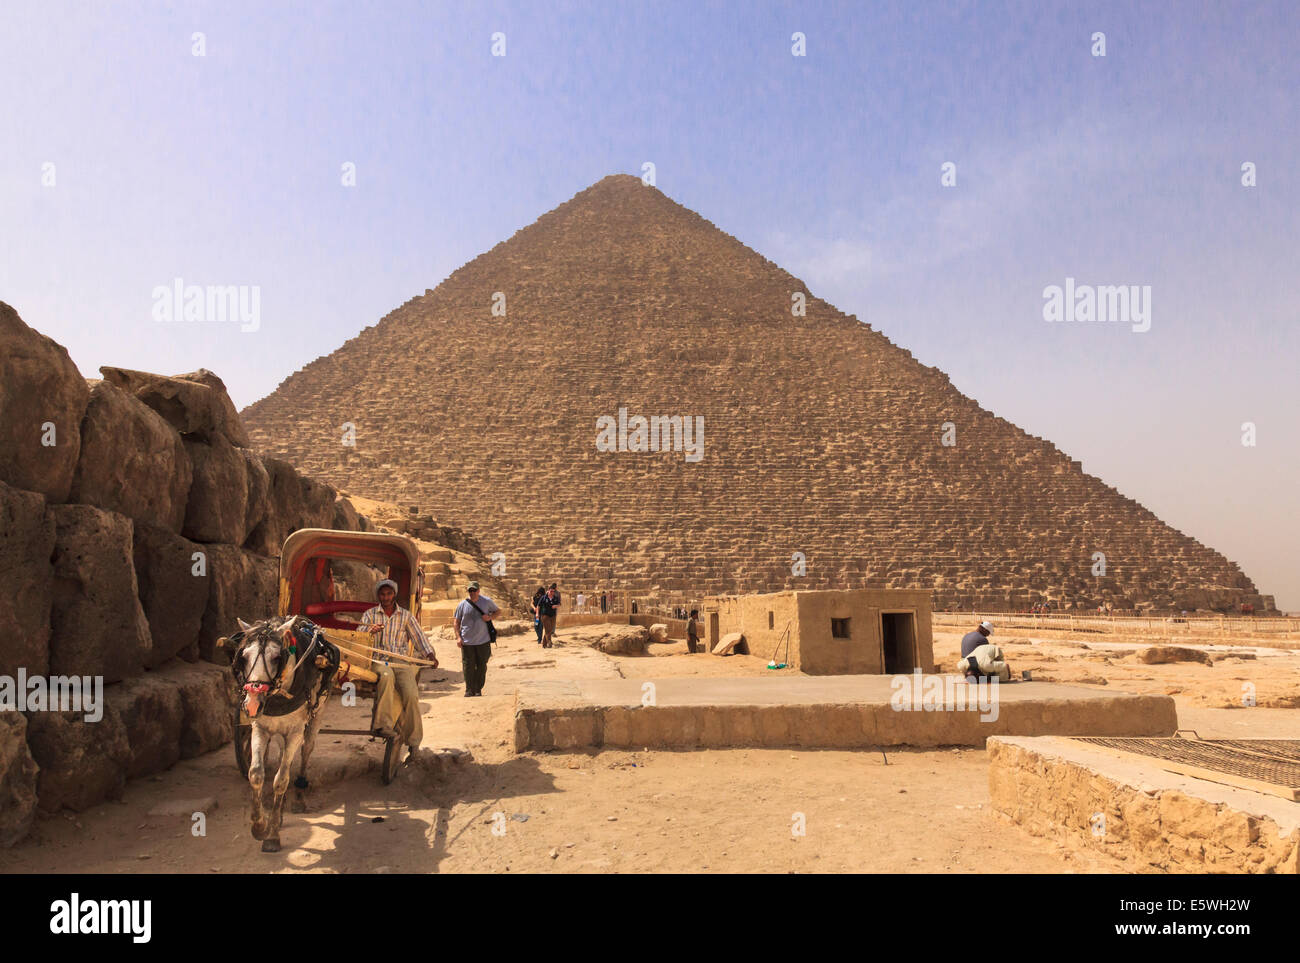 Grande pyramide de Gizeh au Caire, Egypte - Pyramides de Gizeh, avec cheval et panier attendent les touristes Banque D'Images